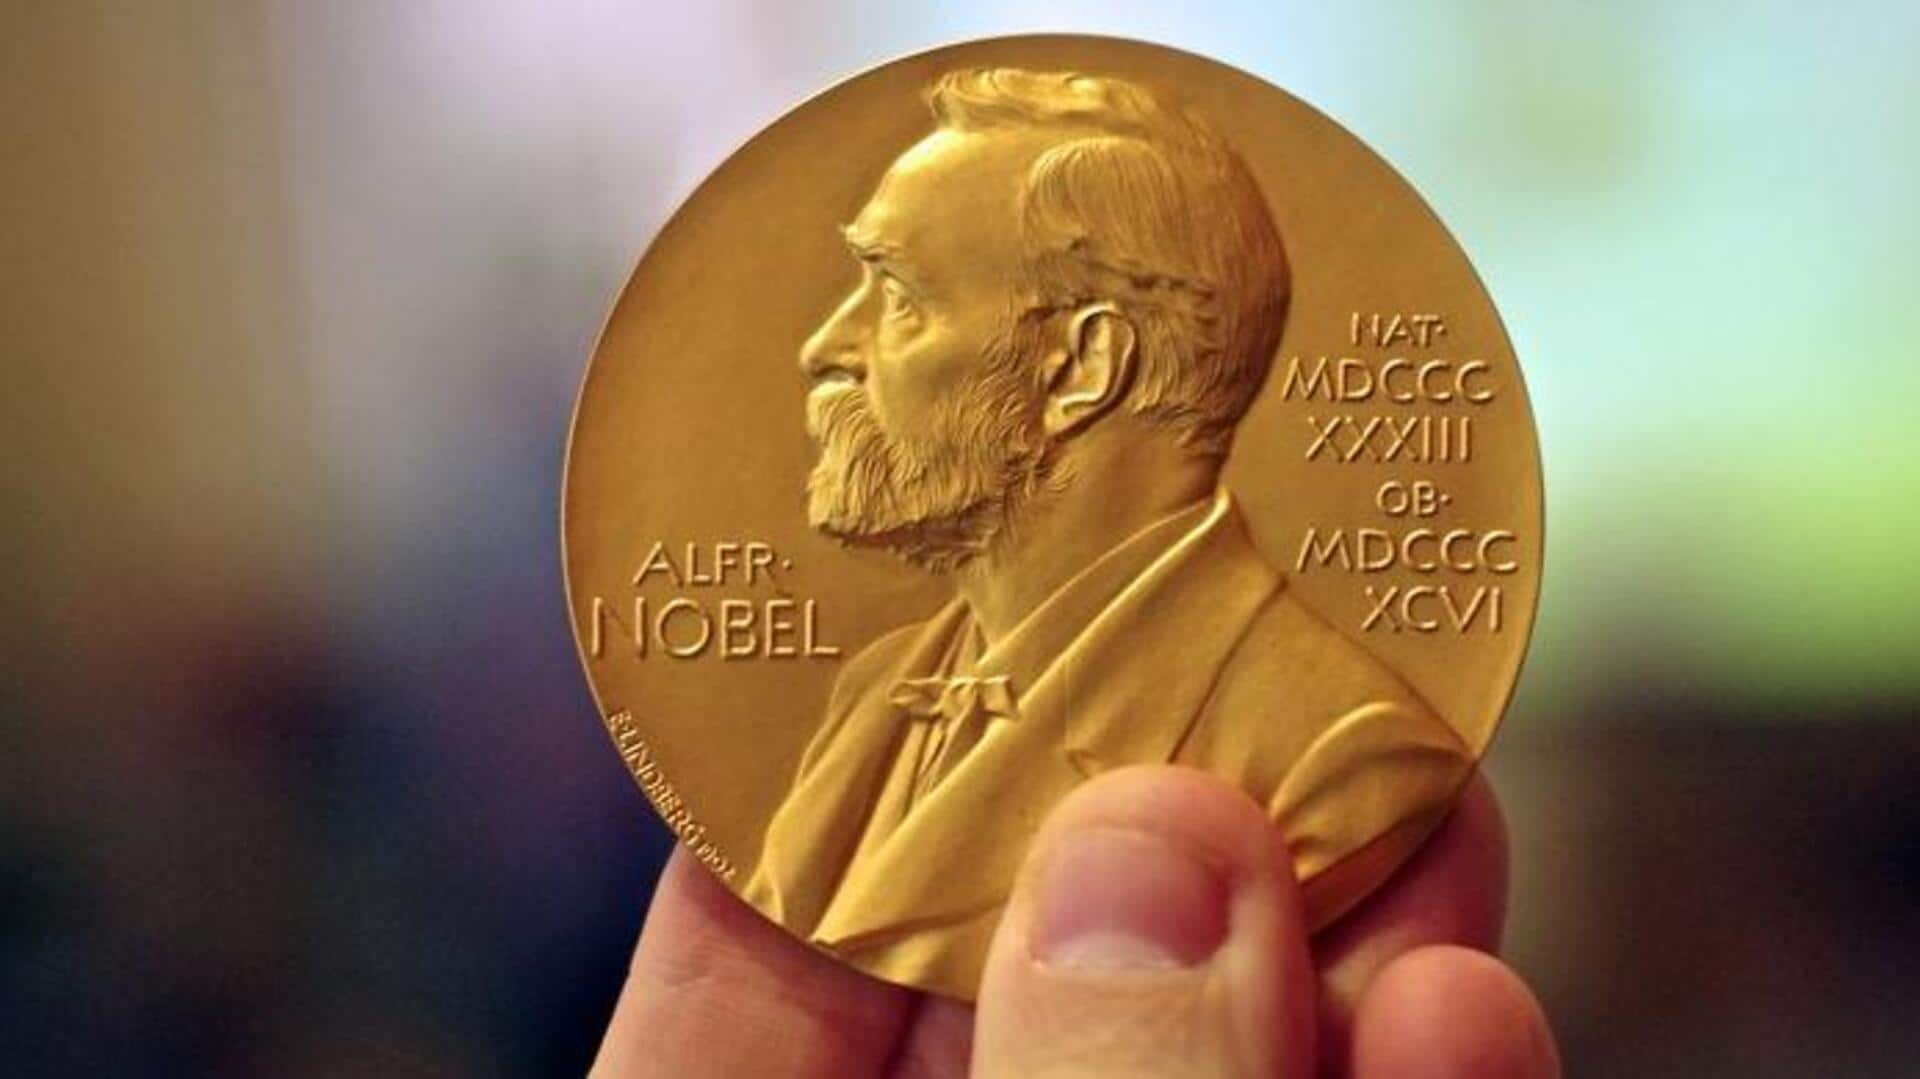 Nobel Prize in Chemistry winners' names leaked in major blunder